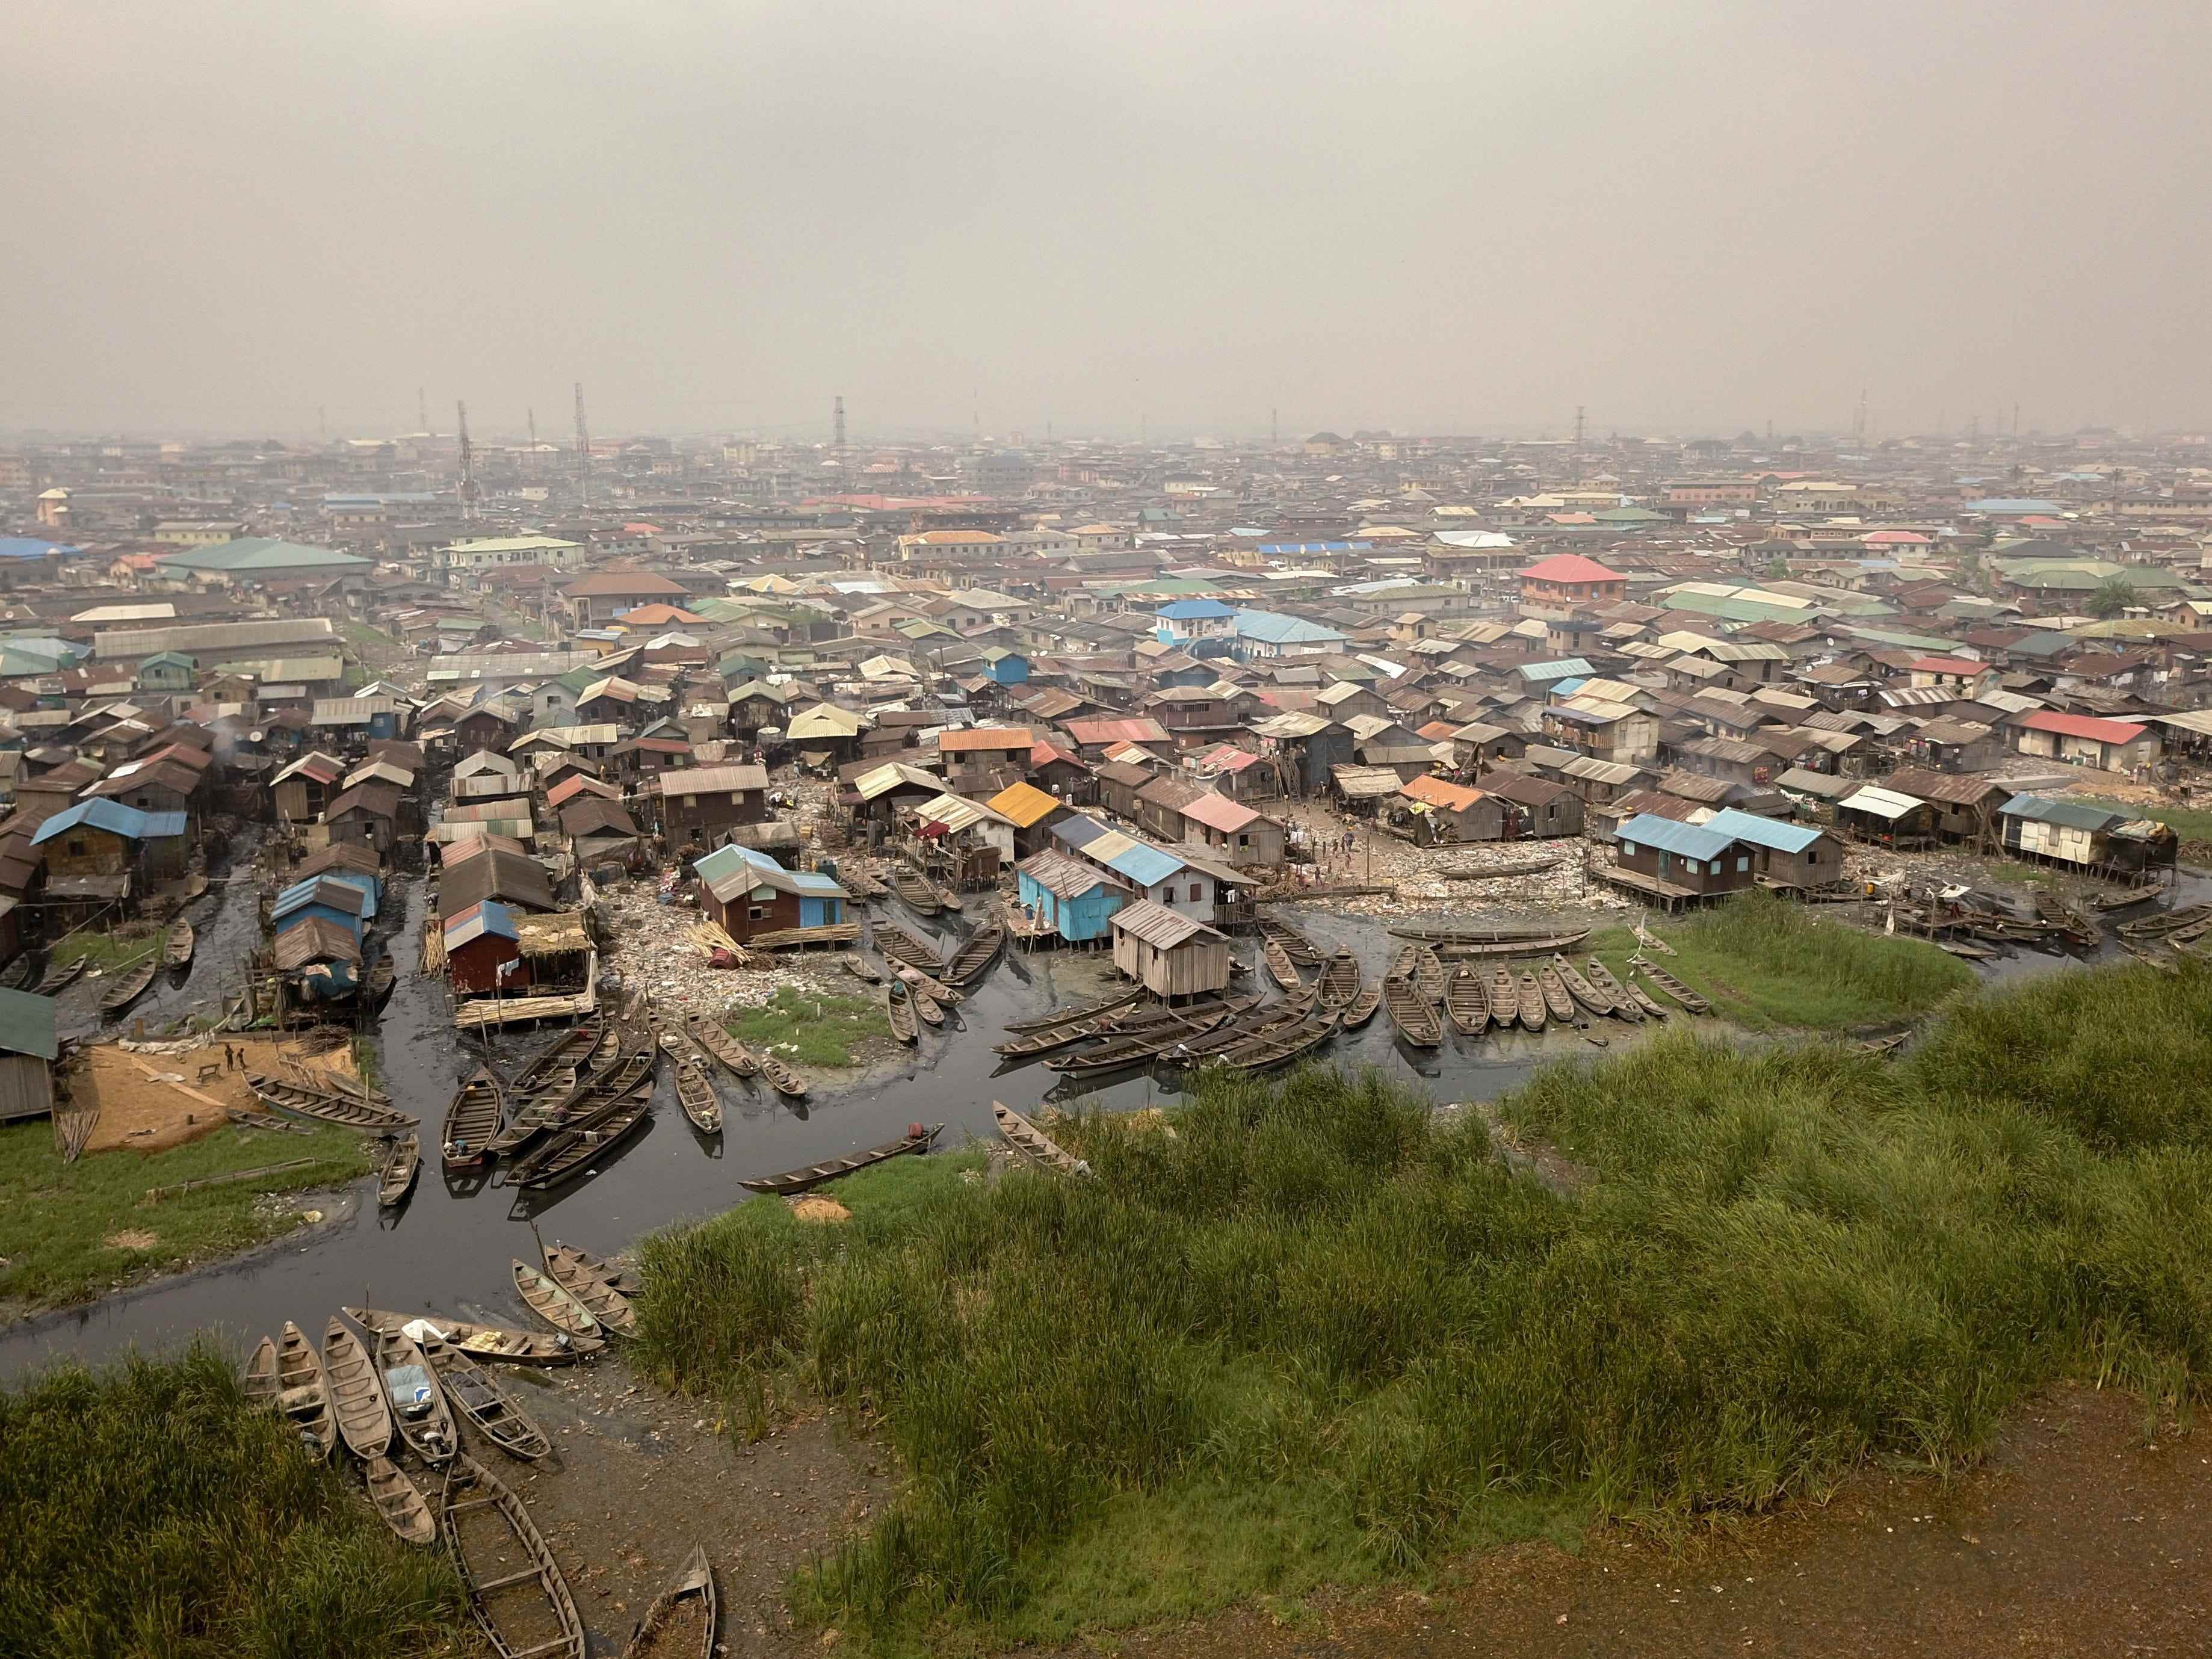 Ein Elendsviertel auf Stelzen in der Fischergemeinde Bariga am Wasser in Lagos, Nigerias Handelshauptstadt.